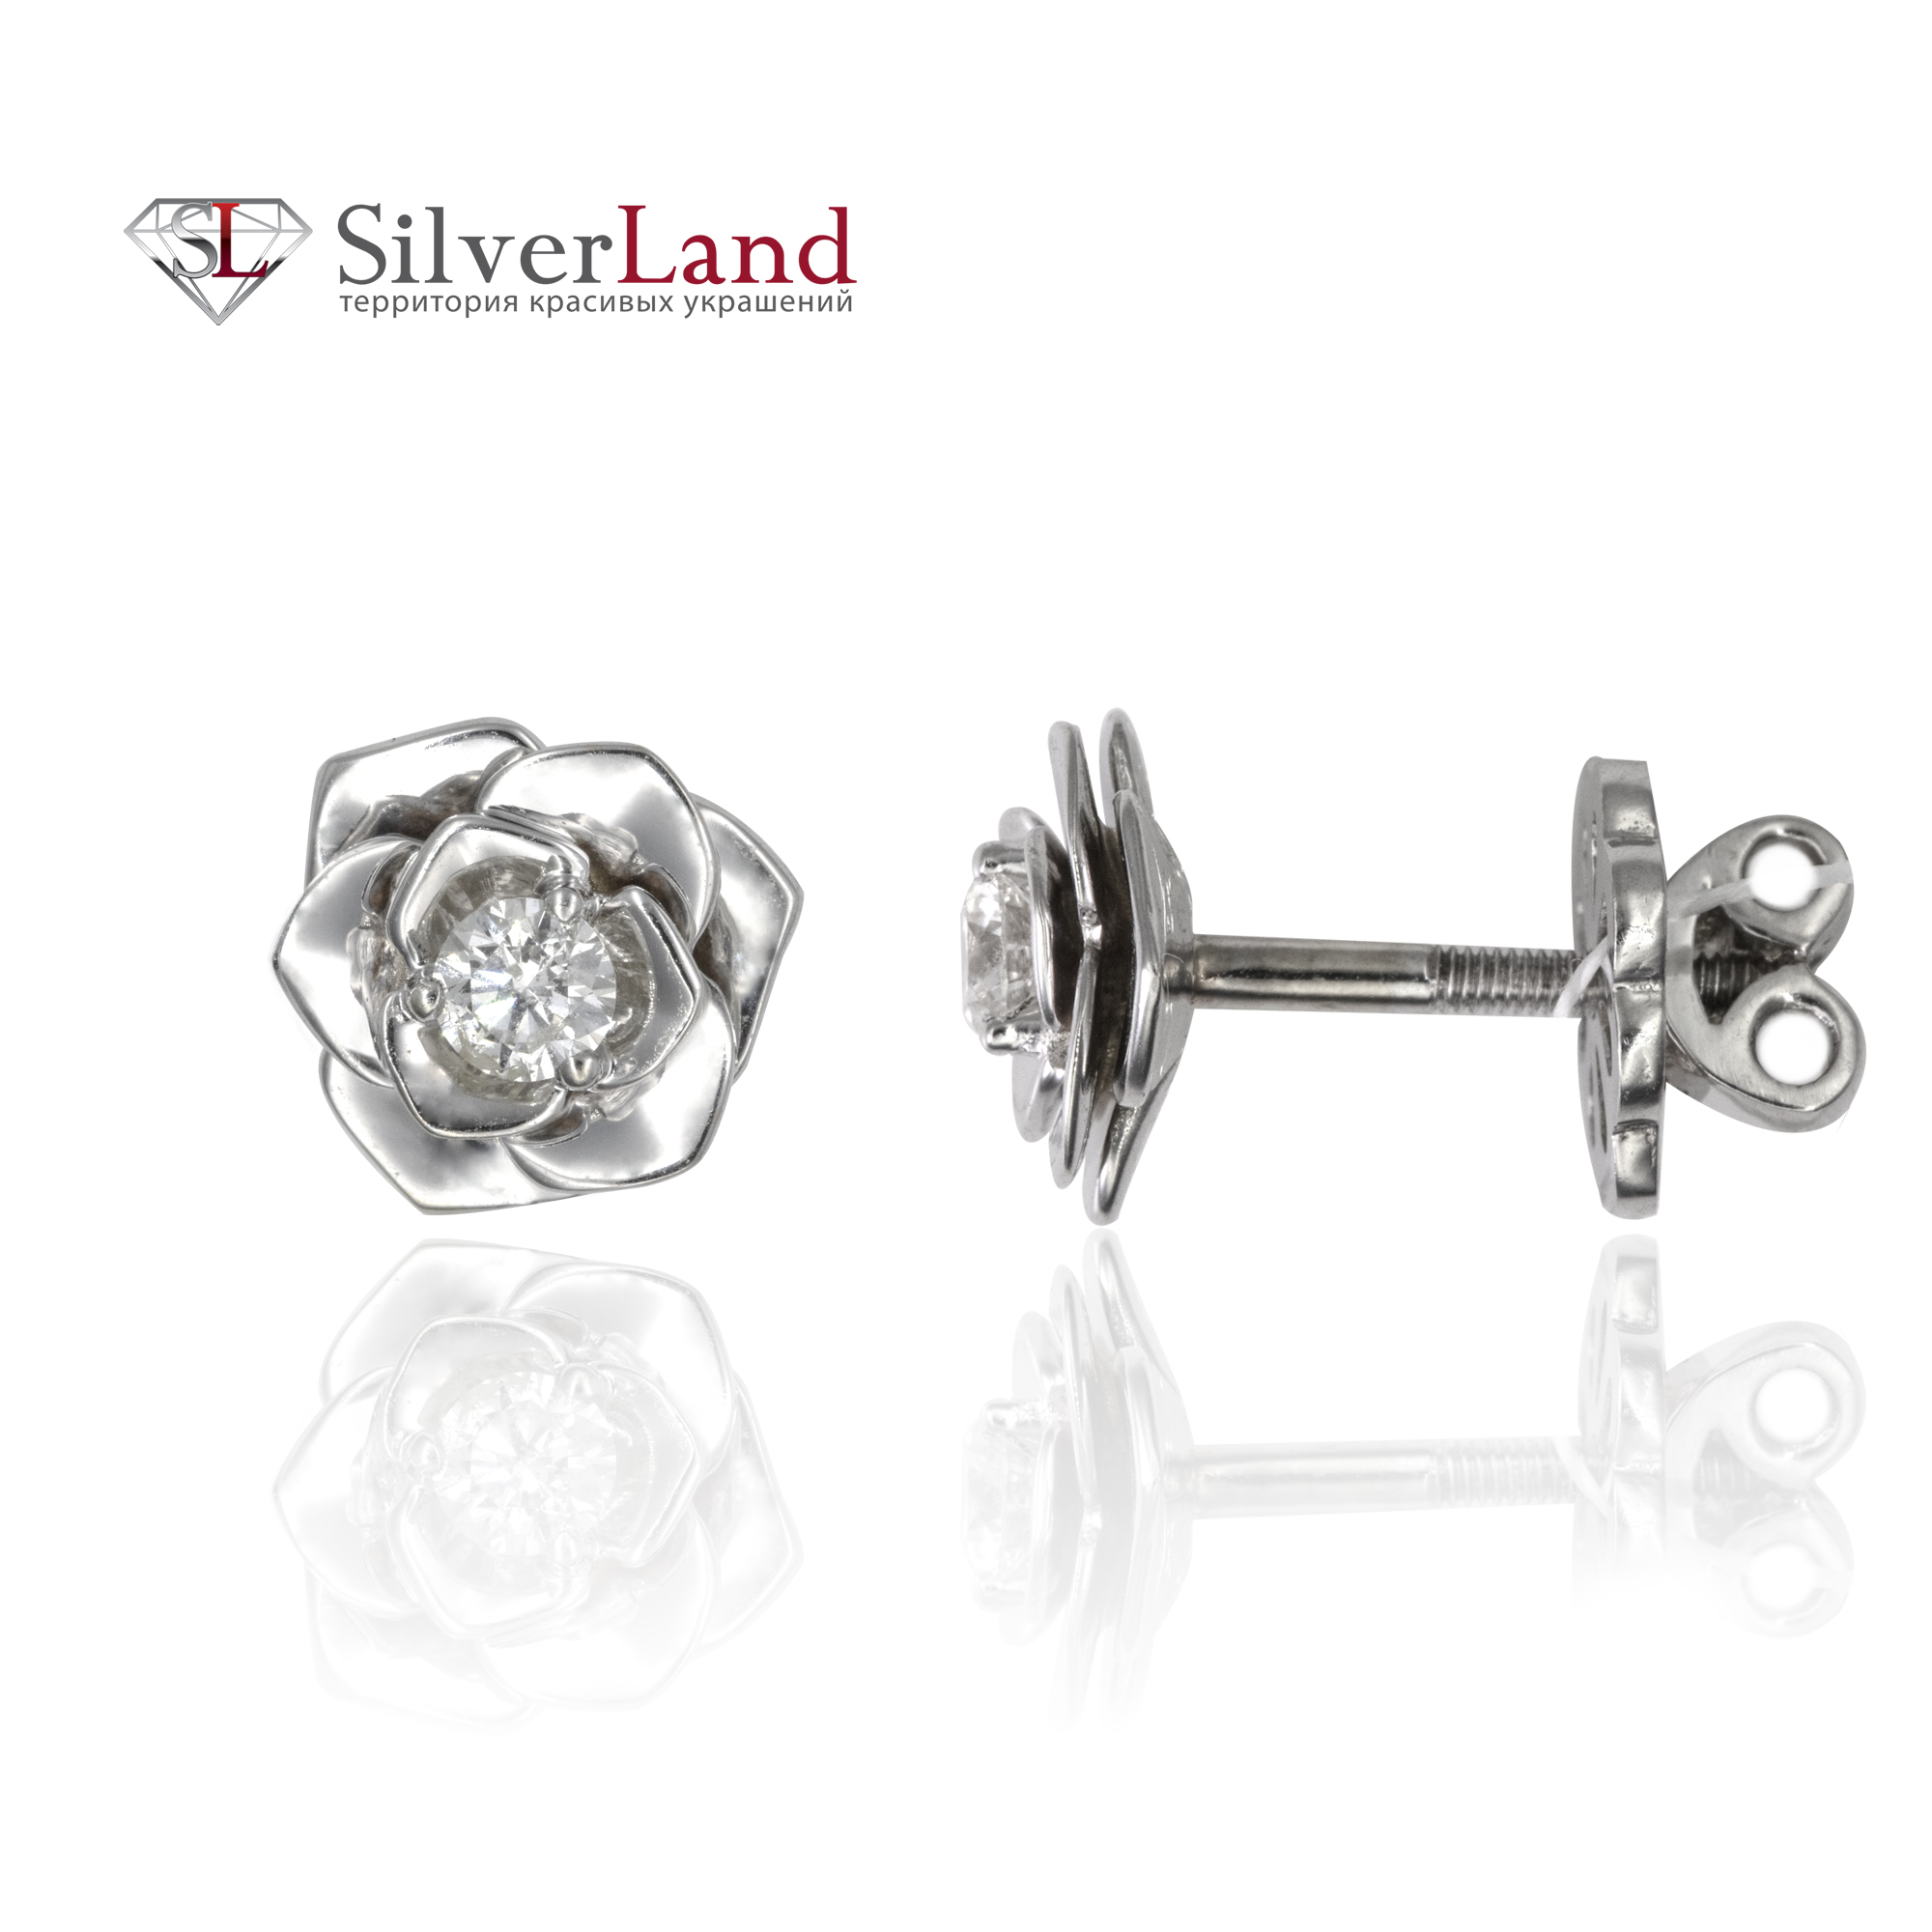 картинка серьги с бриллиантами в форме цветка в сильверленд ком юа